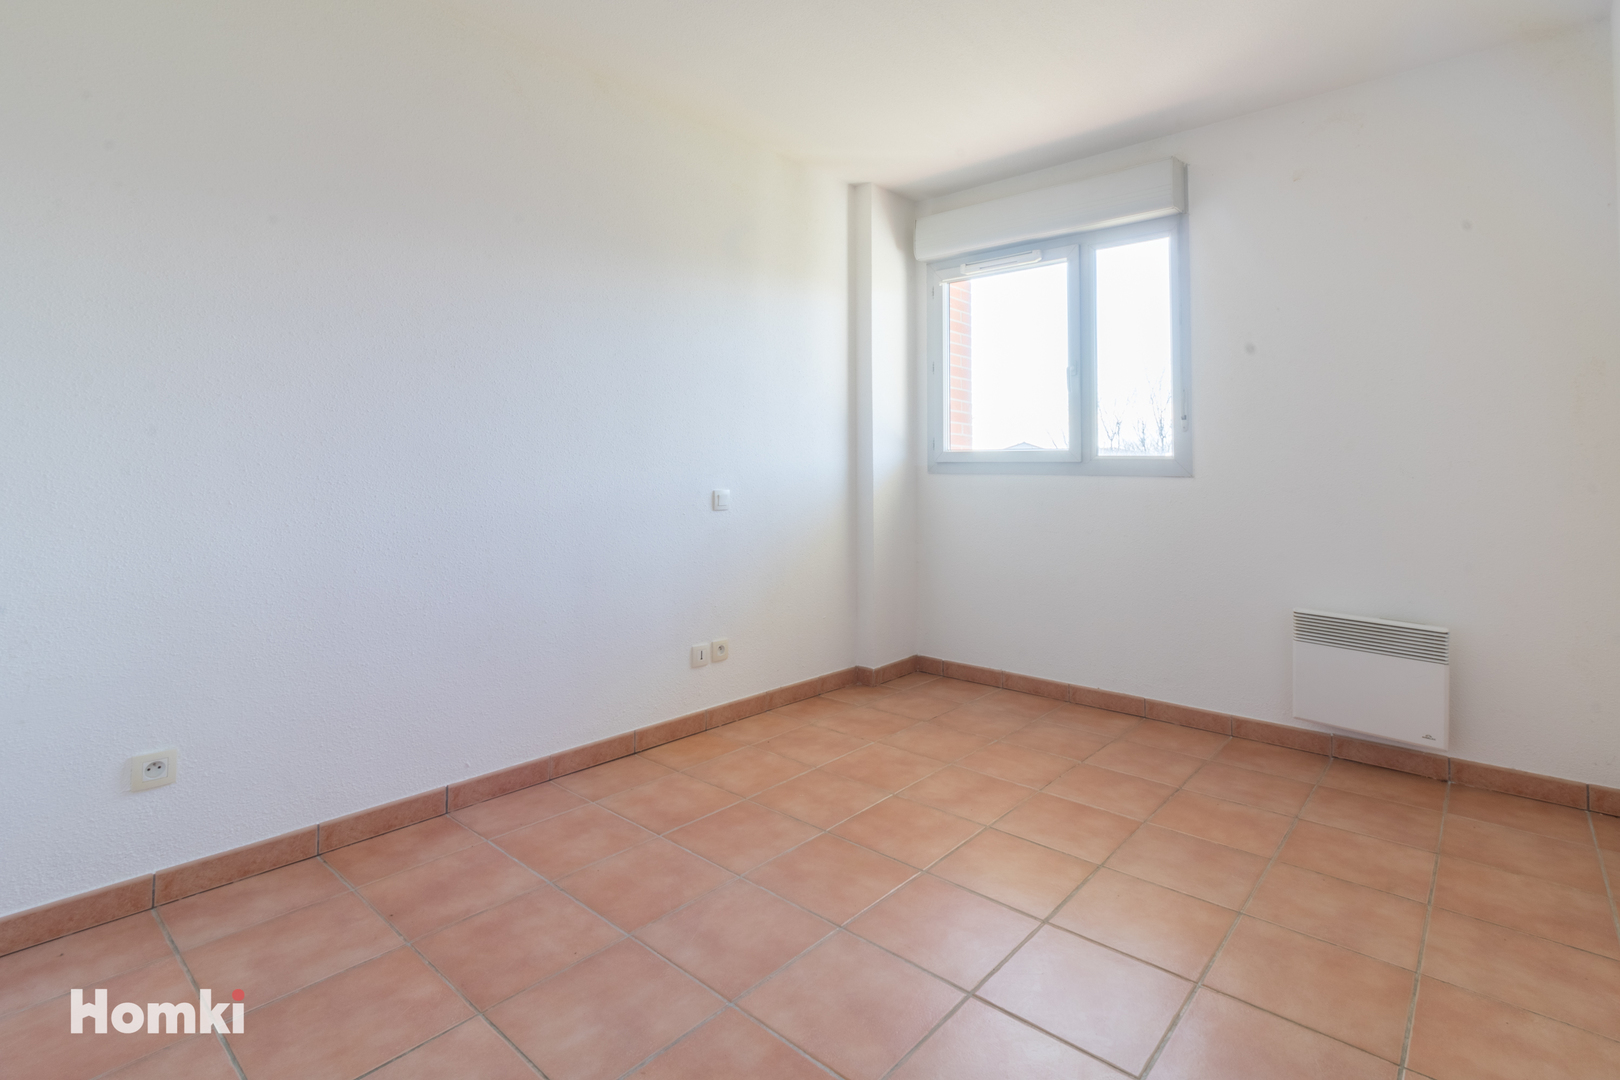 Homki - Vente Appartement  de 41.0 m² à Toulouse 31200